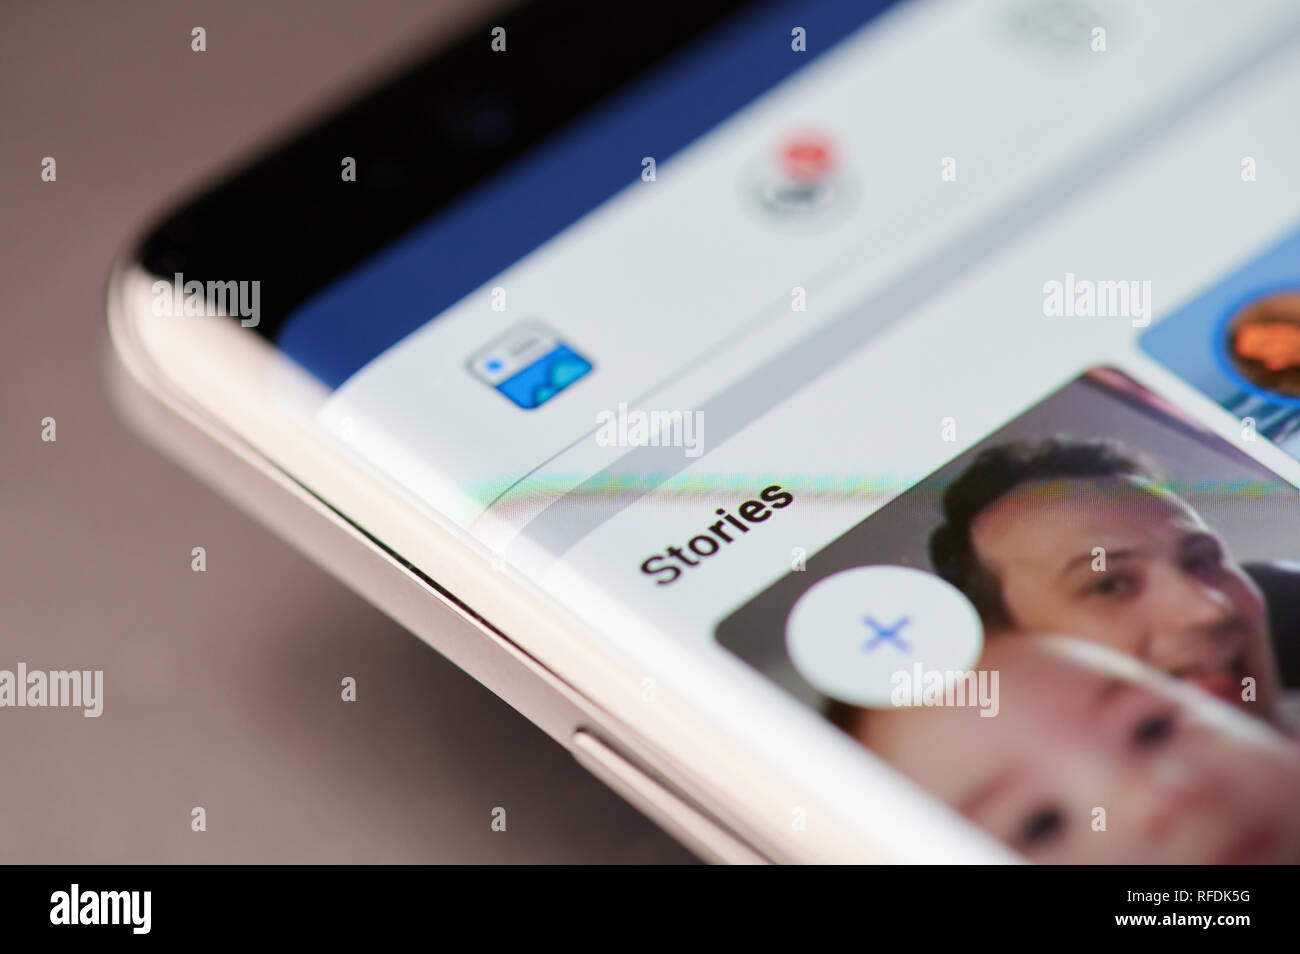 New York, USA - Januar 24, 2019: Facebook Geschichten Menü auf das Gerät mit dem Bildschirm pixelated Nähe zu sehen. Stockfoto